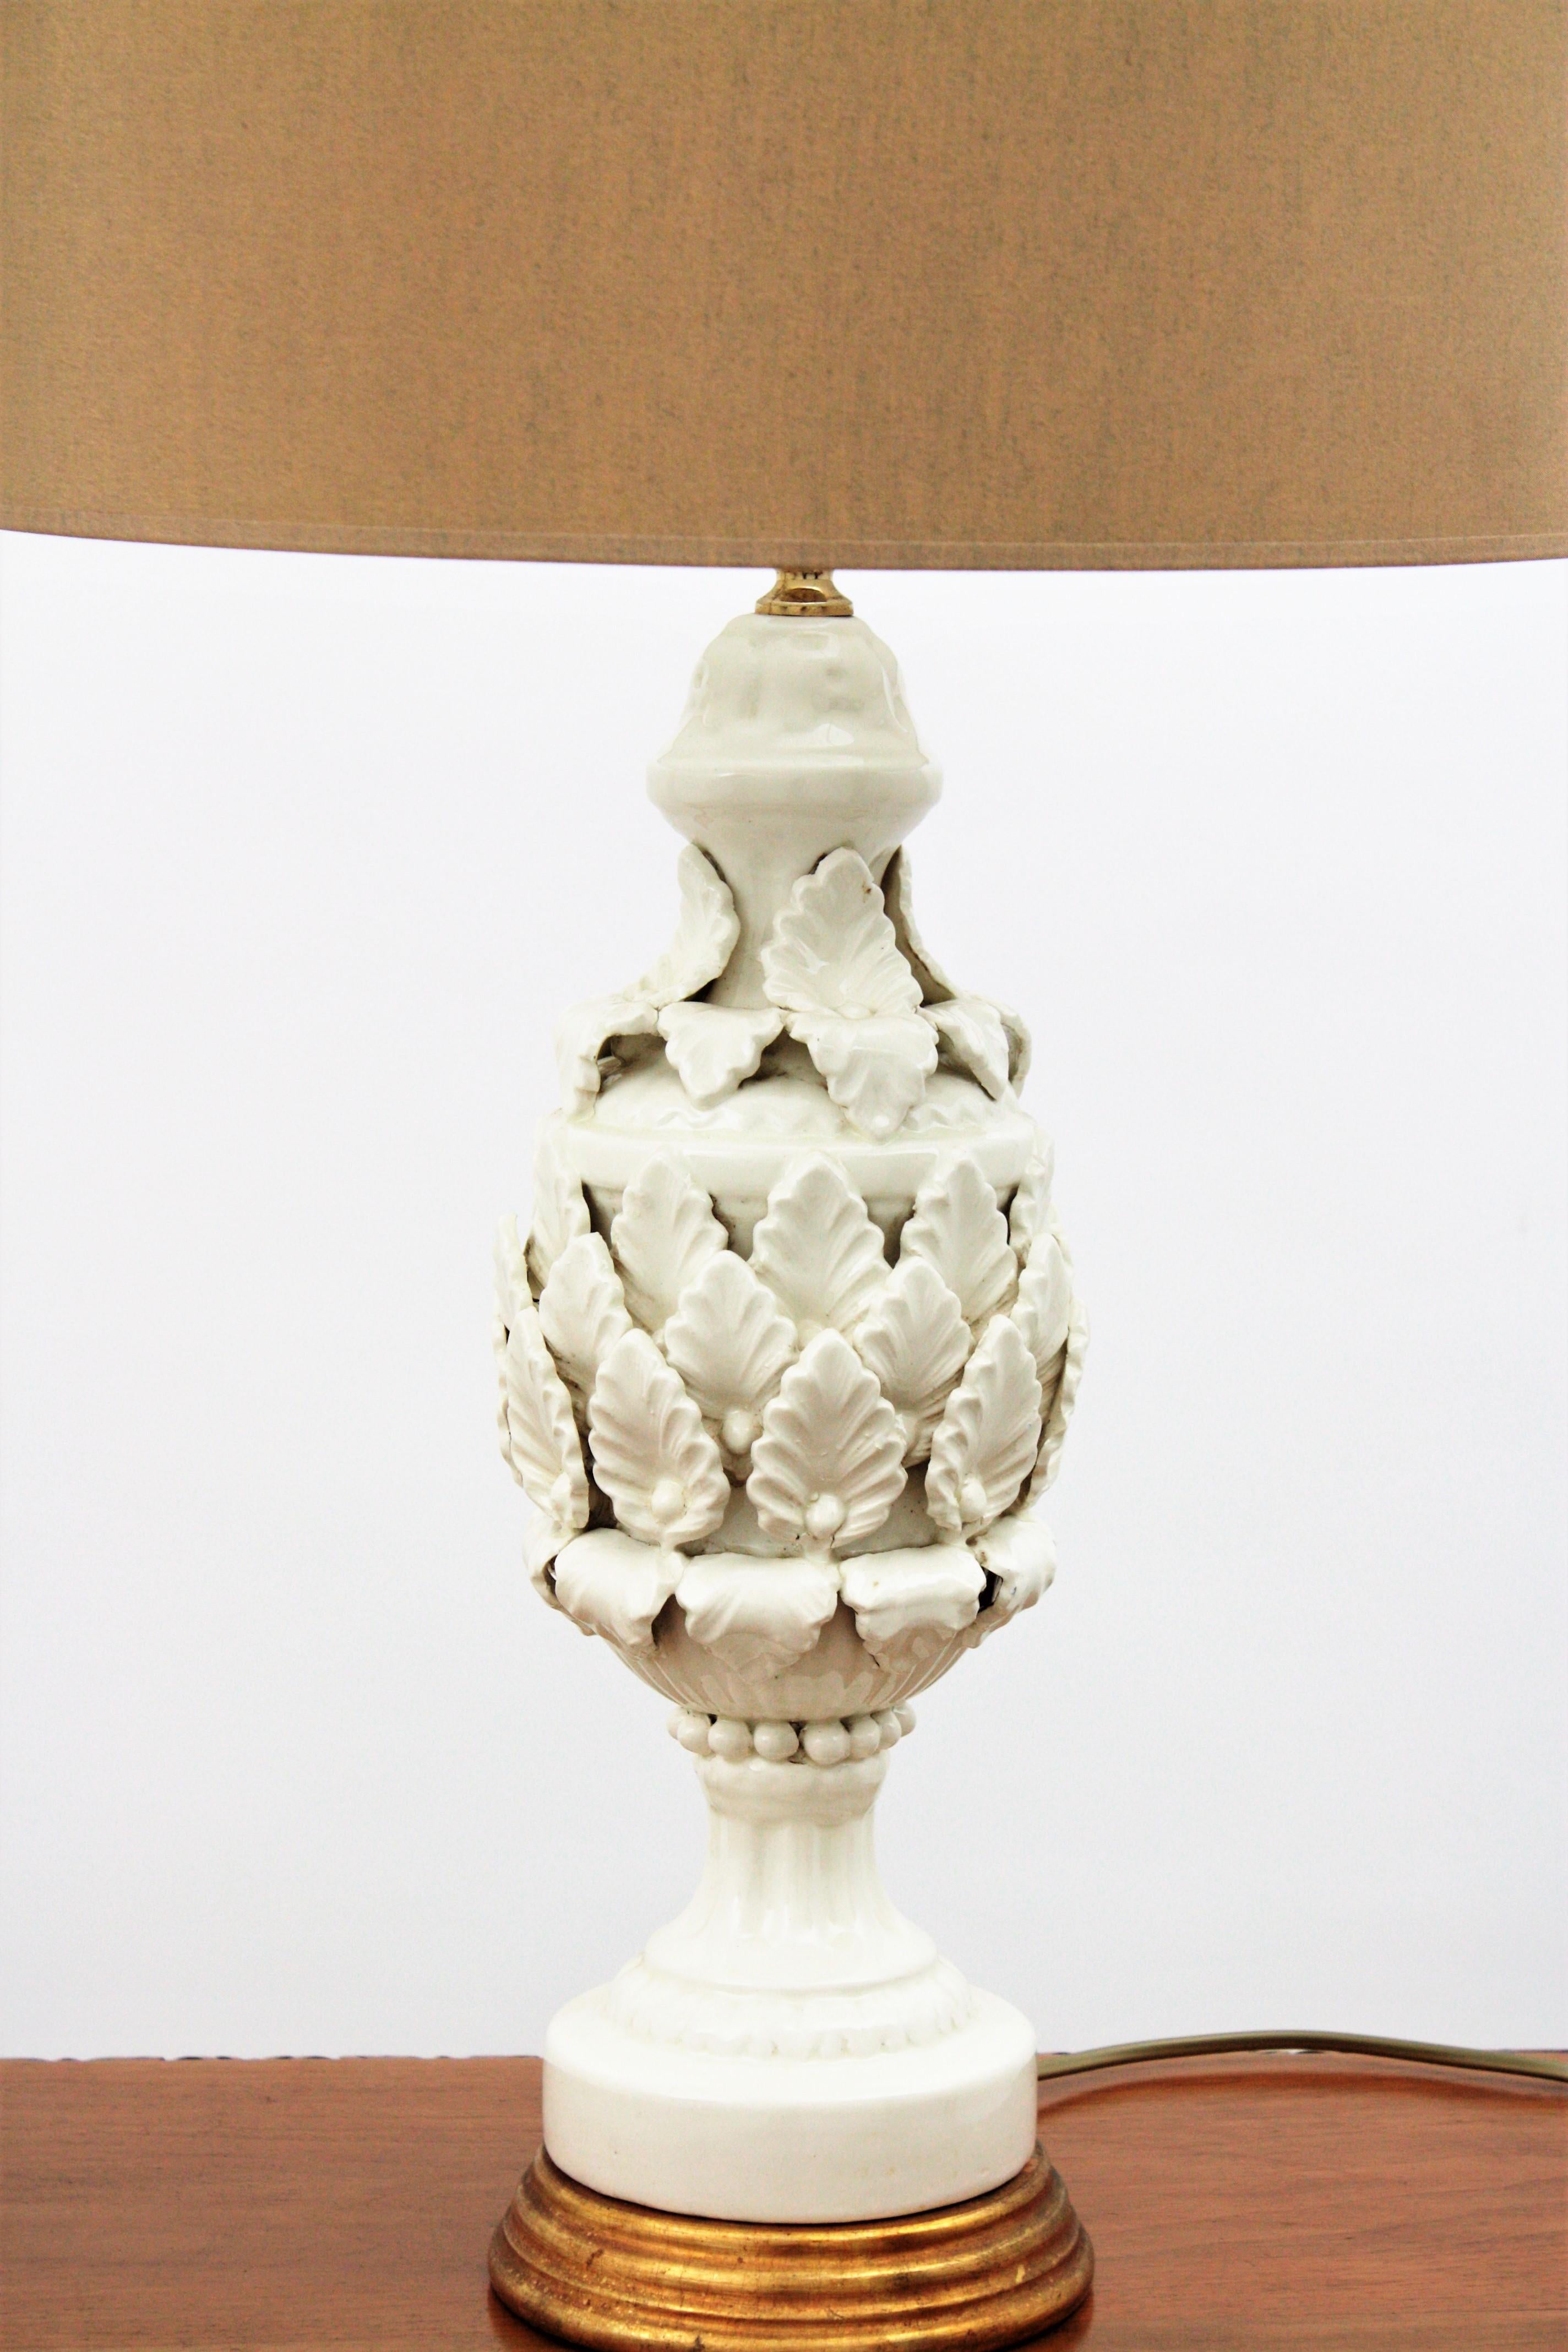 Spanish Manises Majolica White Glazed Ceramic Table Lamp on Giltwood Pedestal 1